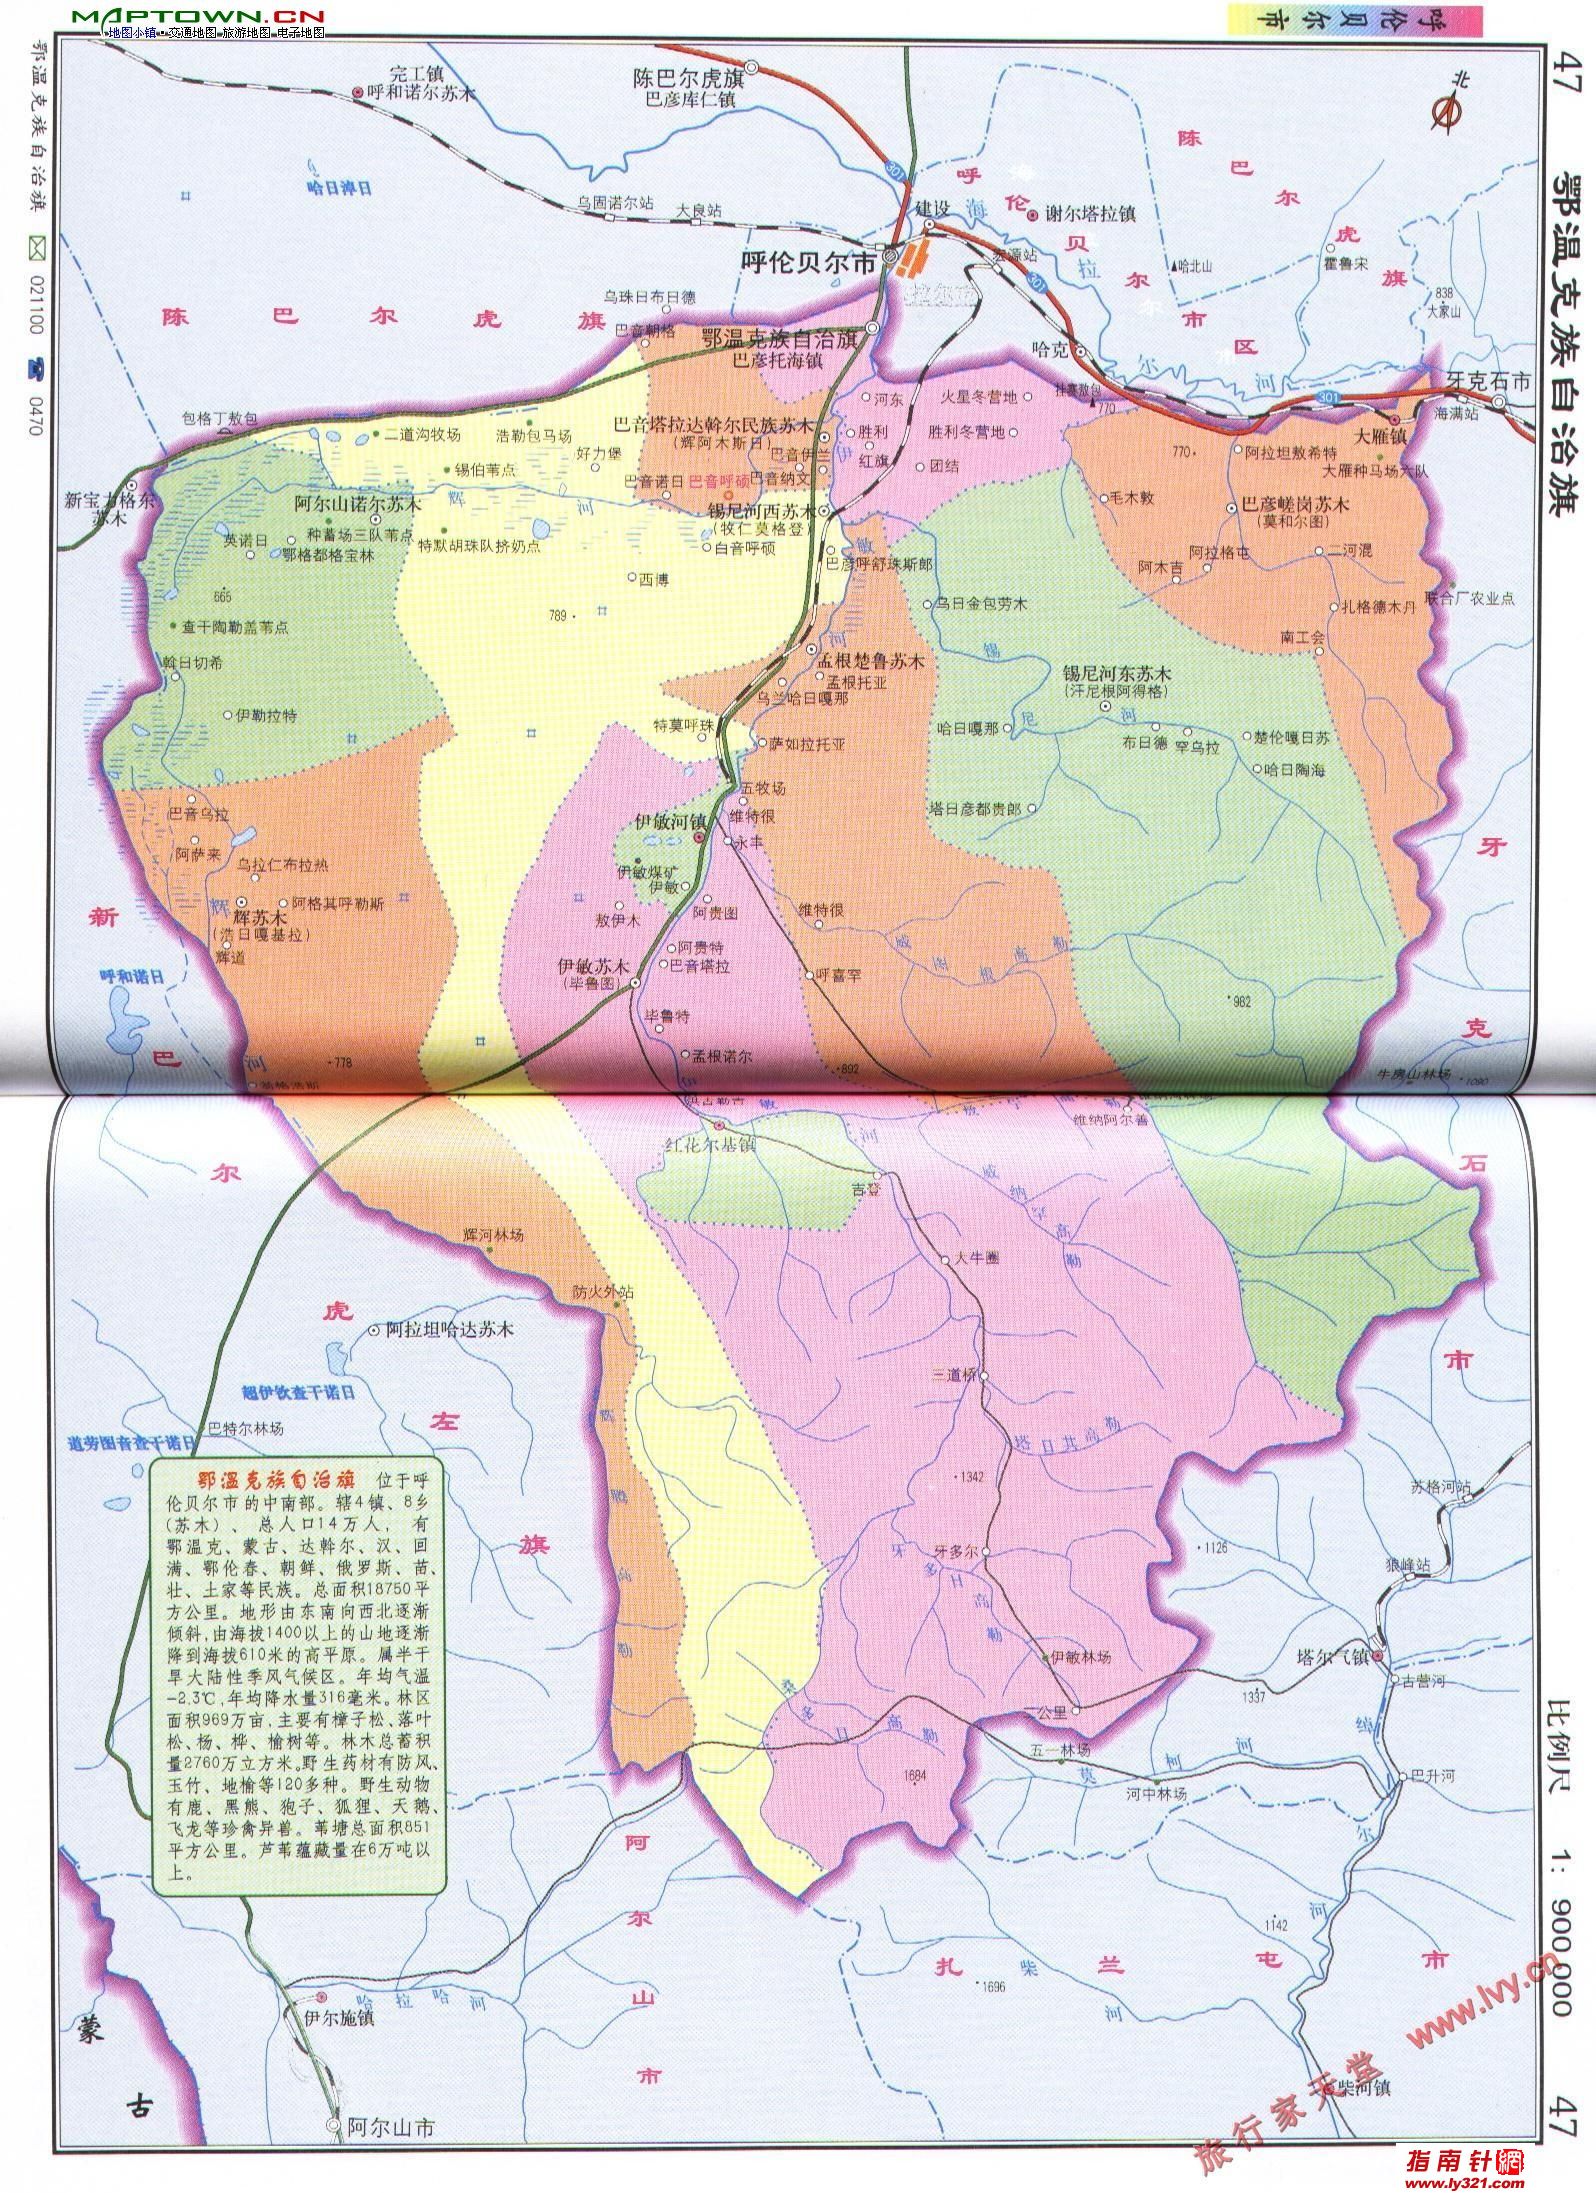 内蒙古呼伦贝尔鄂温克族自治旗区划交通地图图片